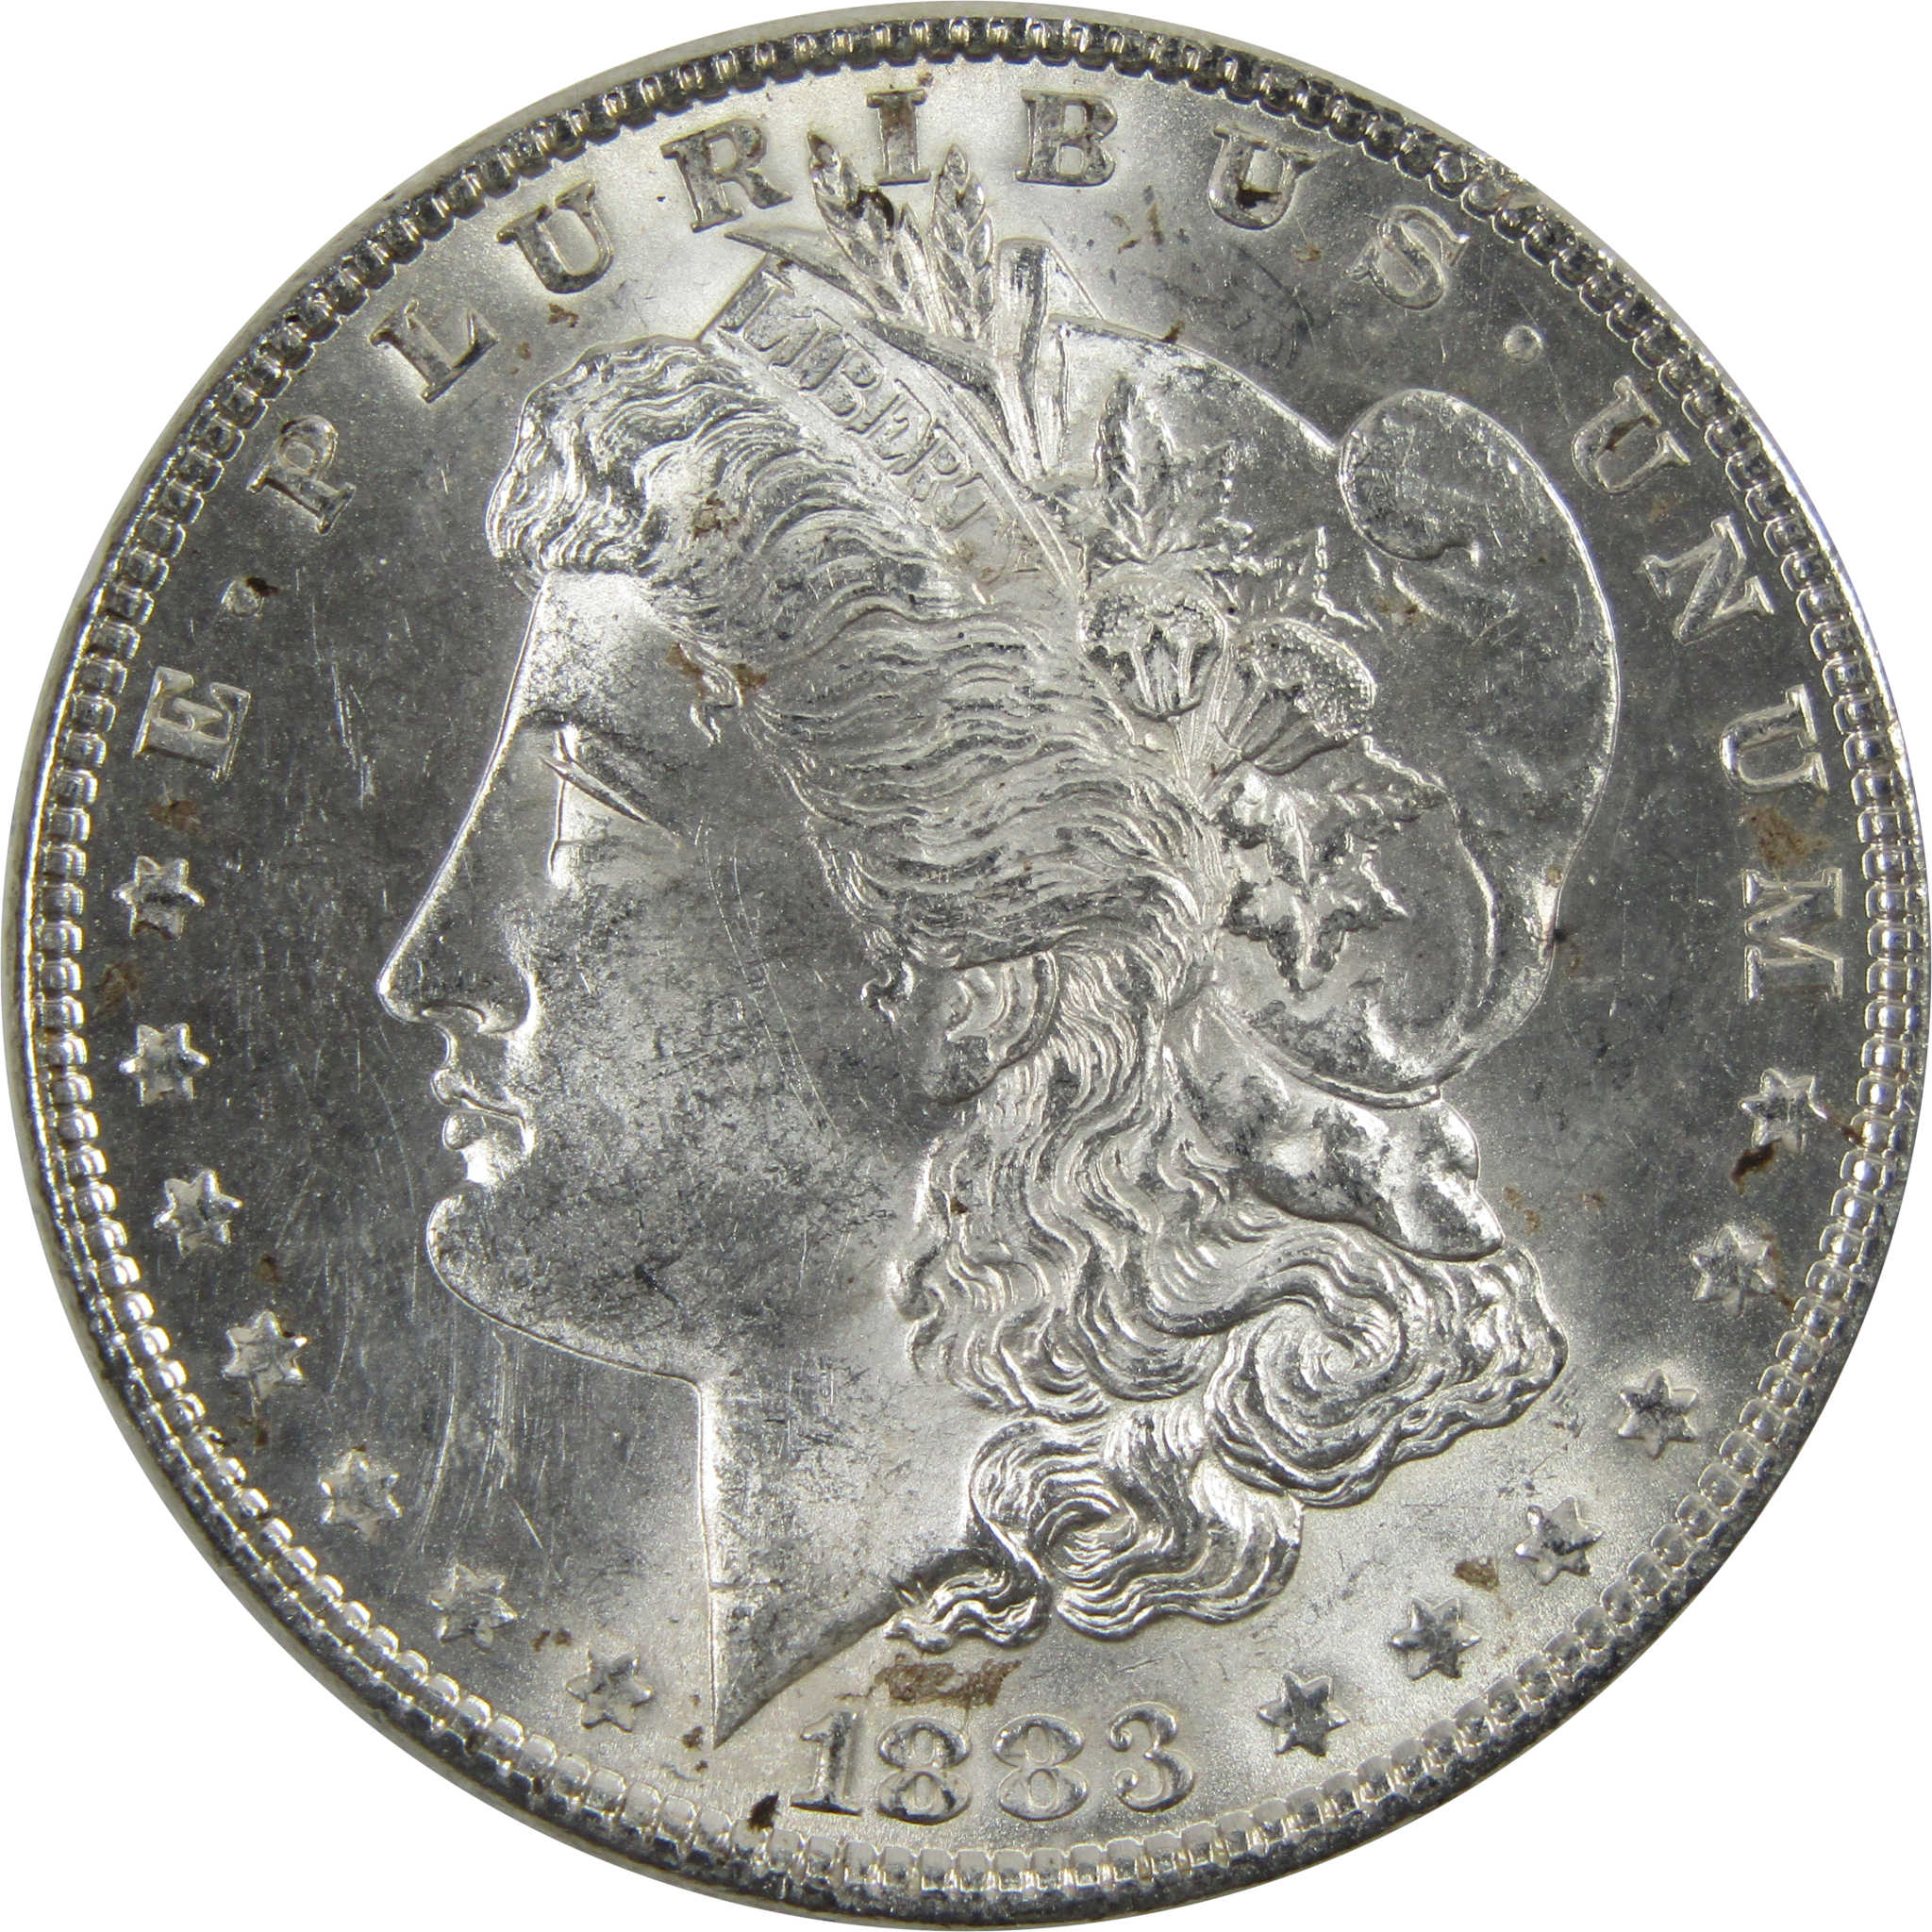 1883 Morgan Dollar BU Uncirculated 90% Silver $1 Coin SKU:I5169 - Morgan coin - Morgan silver dollar - Morgan silver dollar for sale - Profile Coins &amp; Collectibles